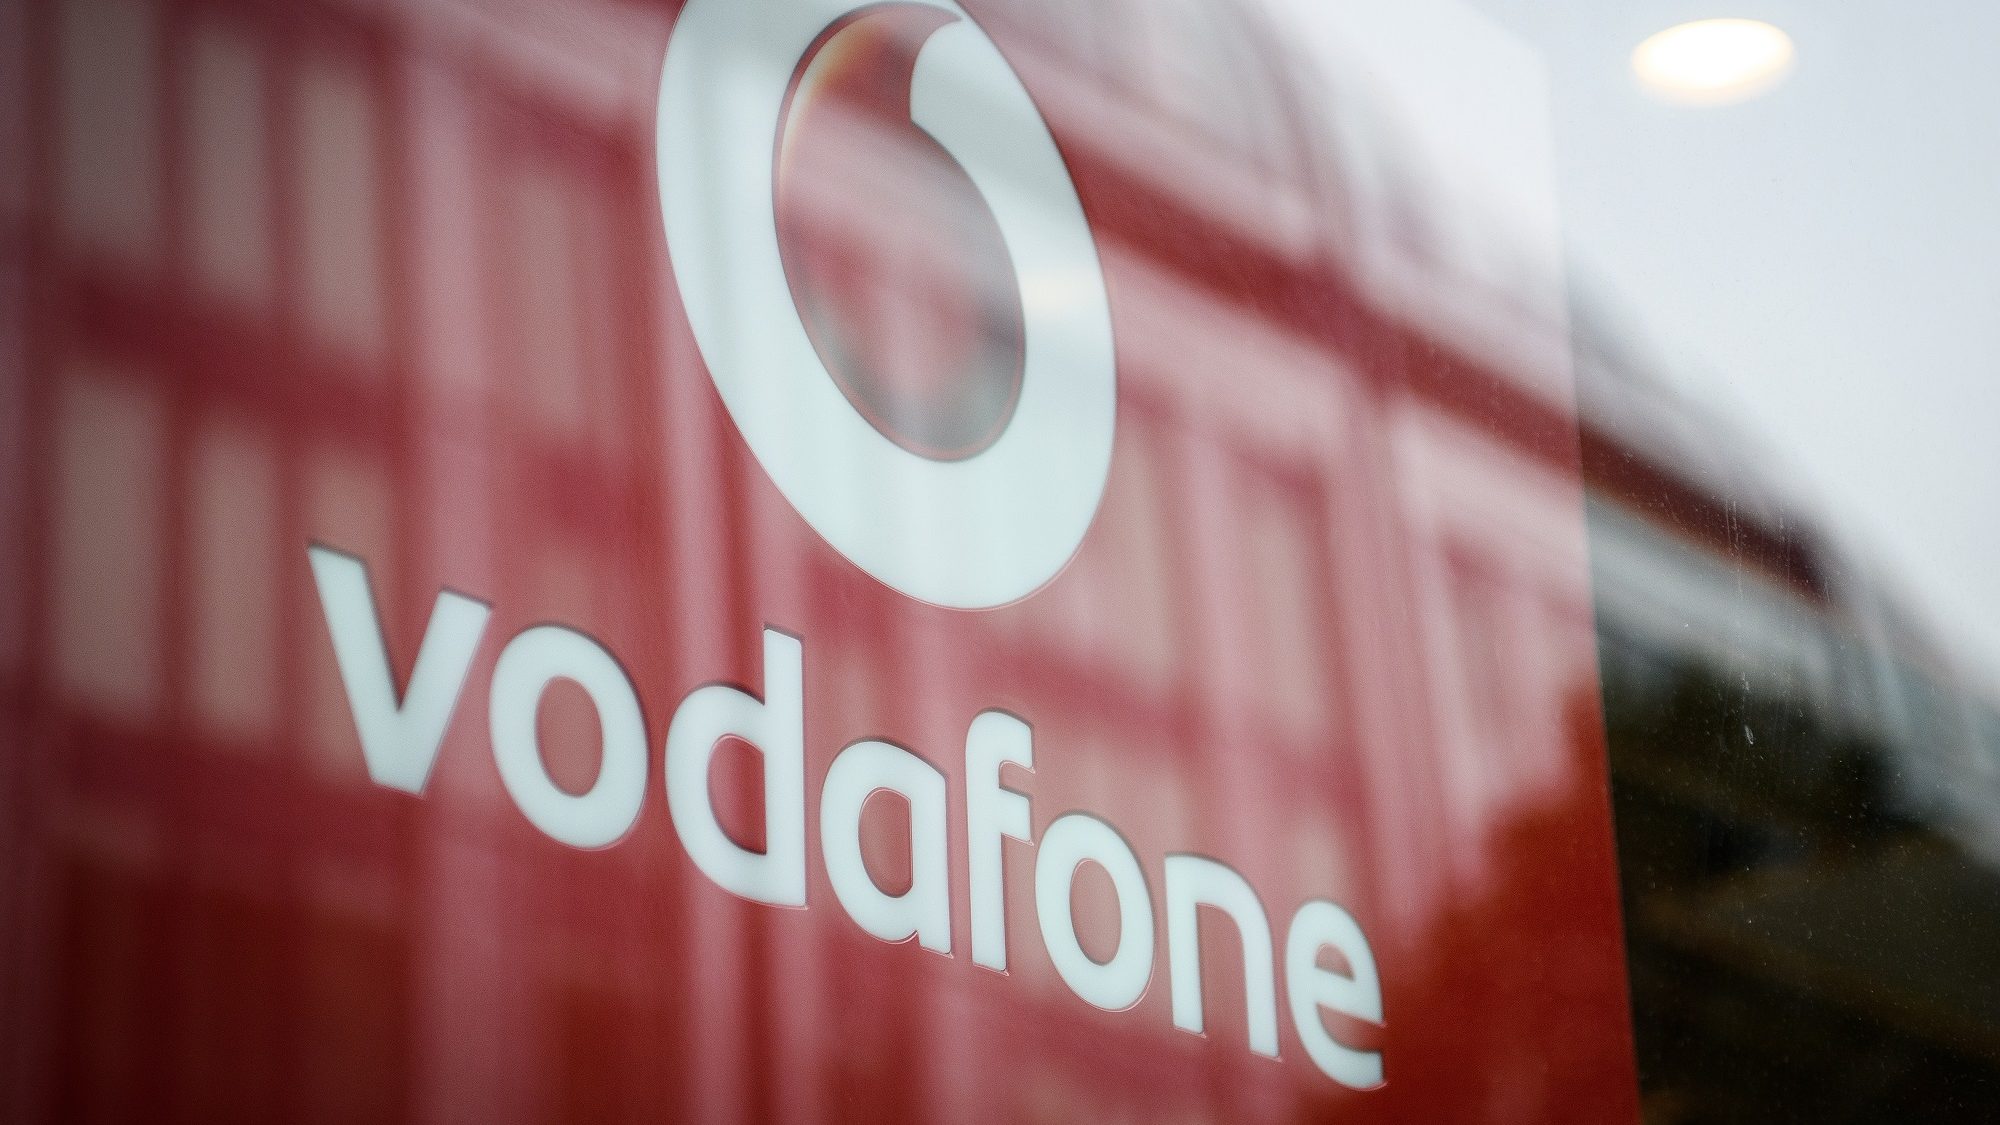 Lehaltak a Google szolgáltatásai a Vodafone-nál